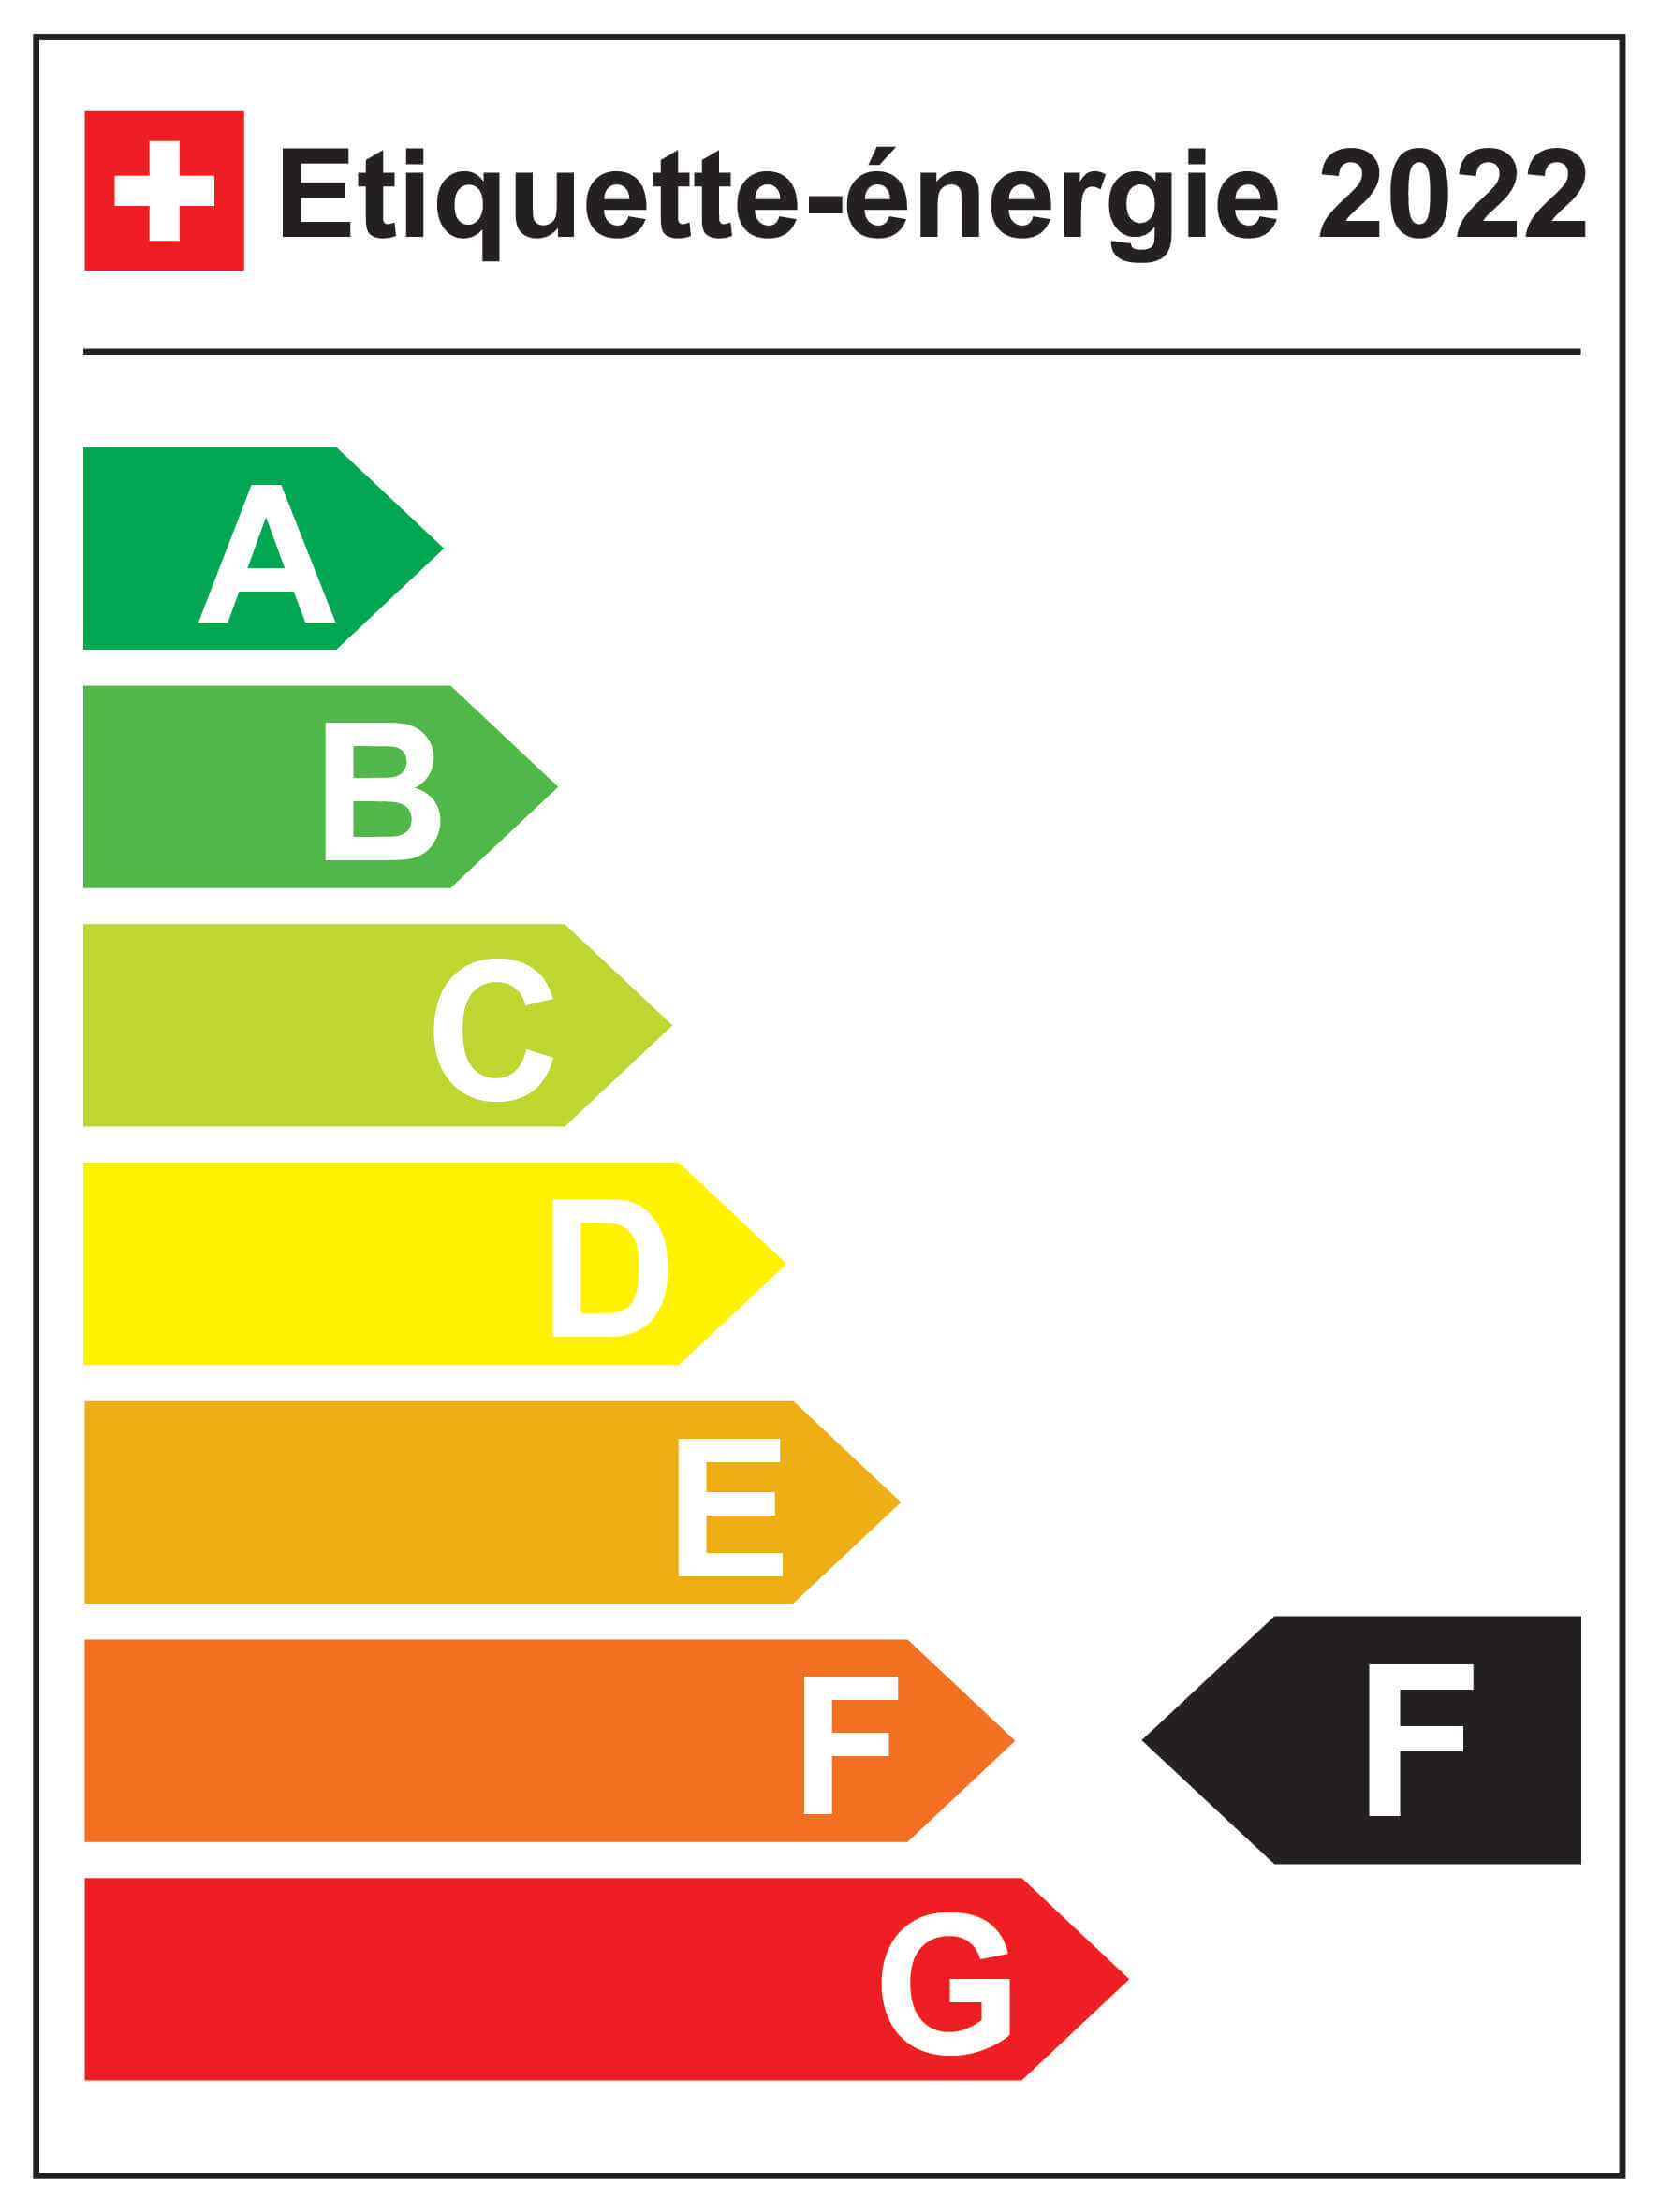 Energieeffizienz-Kategorie: F